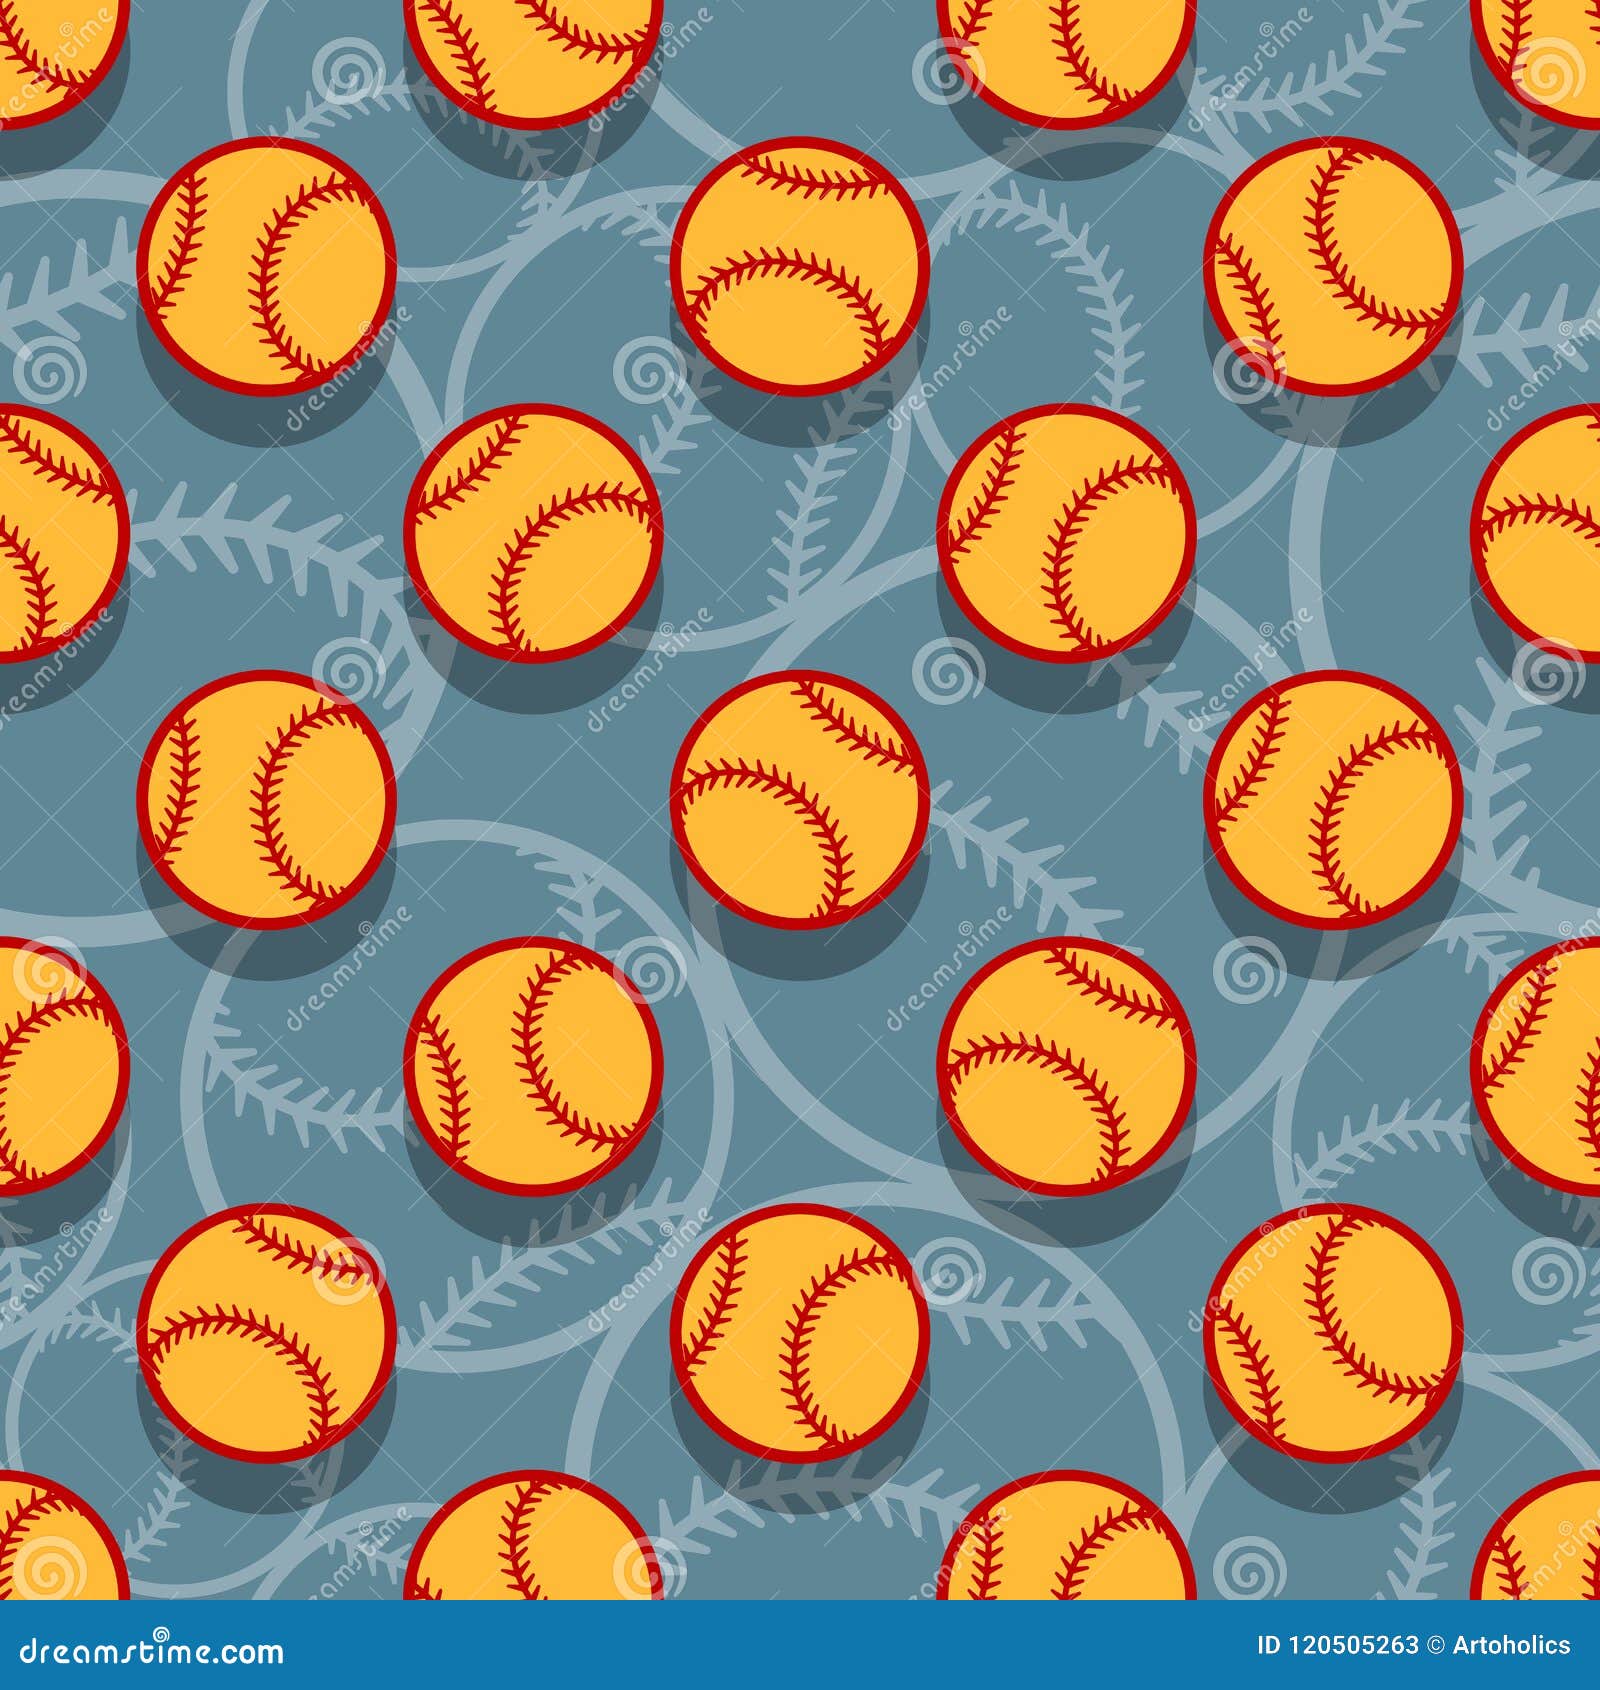 47 Cute Softball Wallpapers  WallpaperSafari